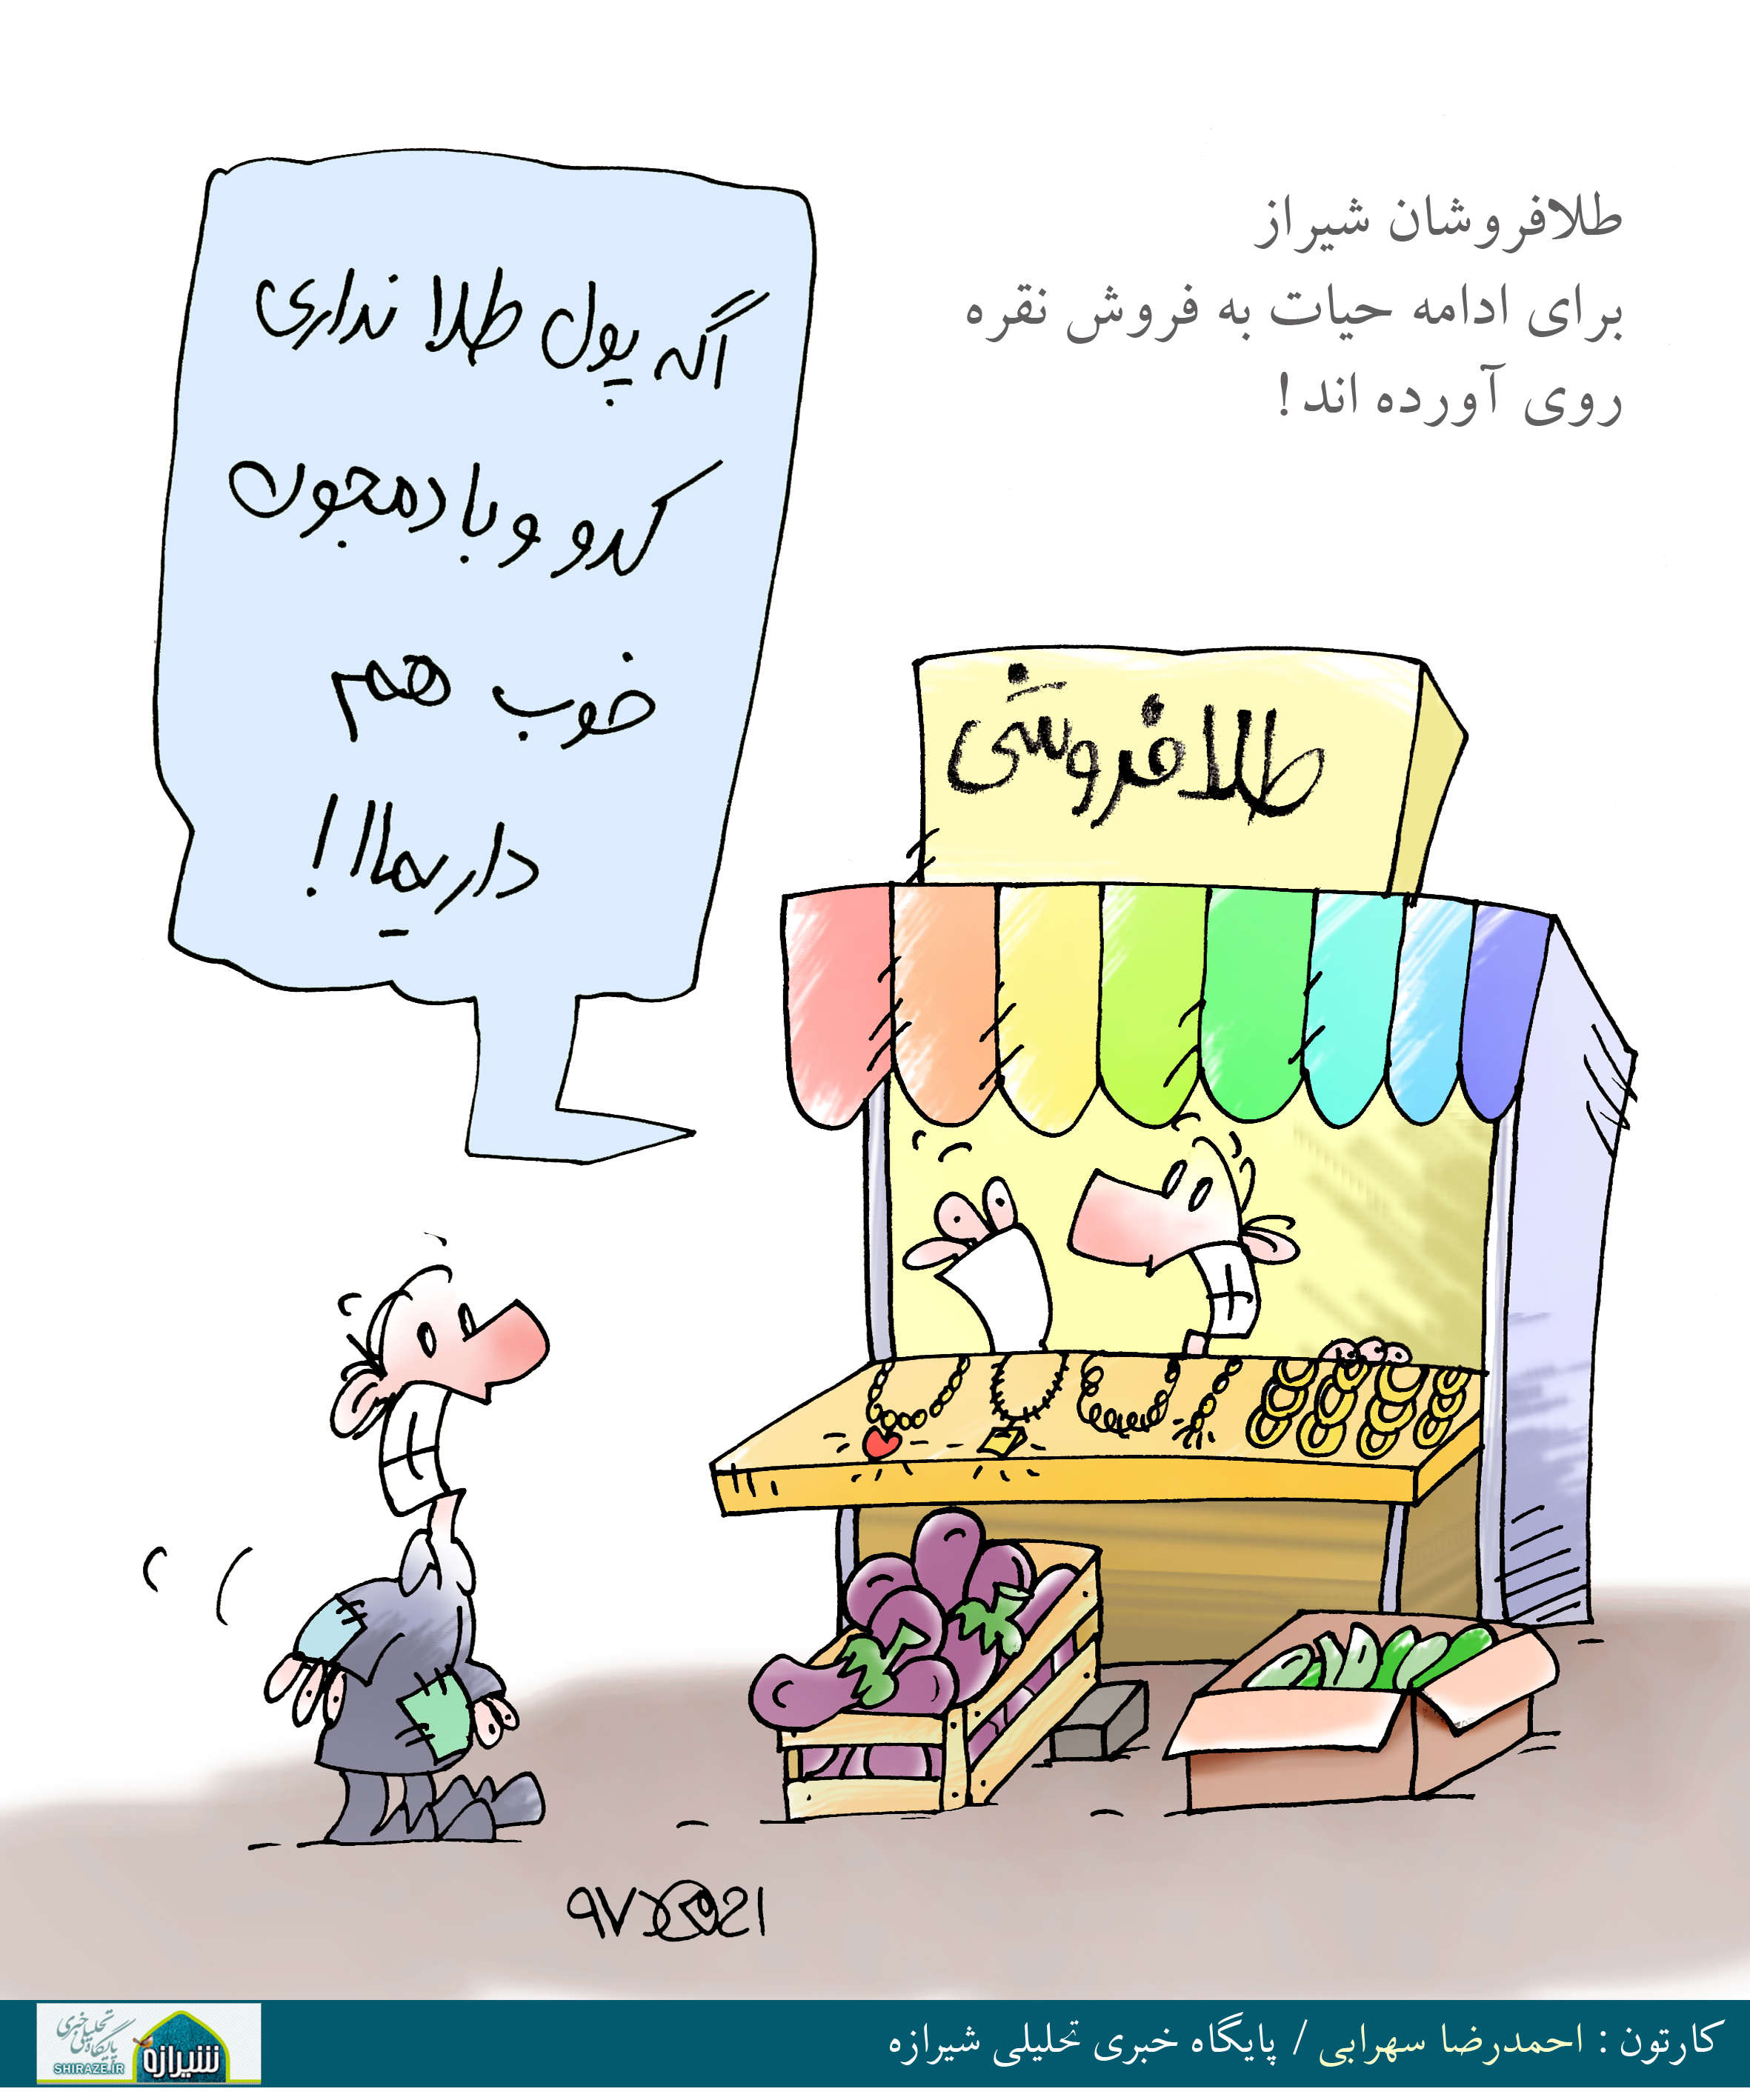 کاریکاتور شیرازه؛ طلافروشان شیراز برای ادامه حیات به فروش نقره روی آورده اند!